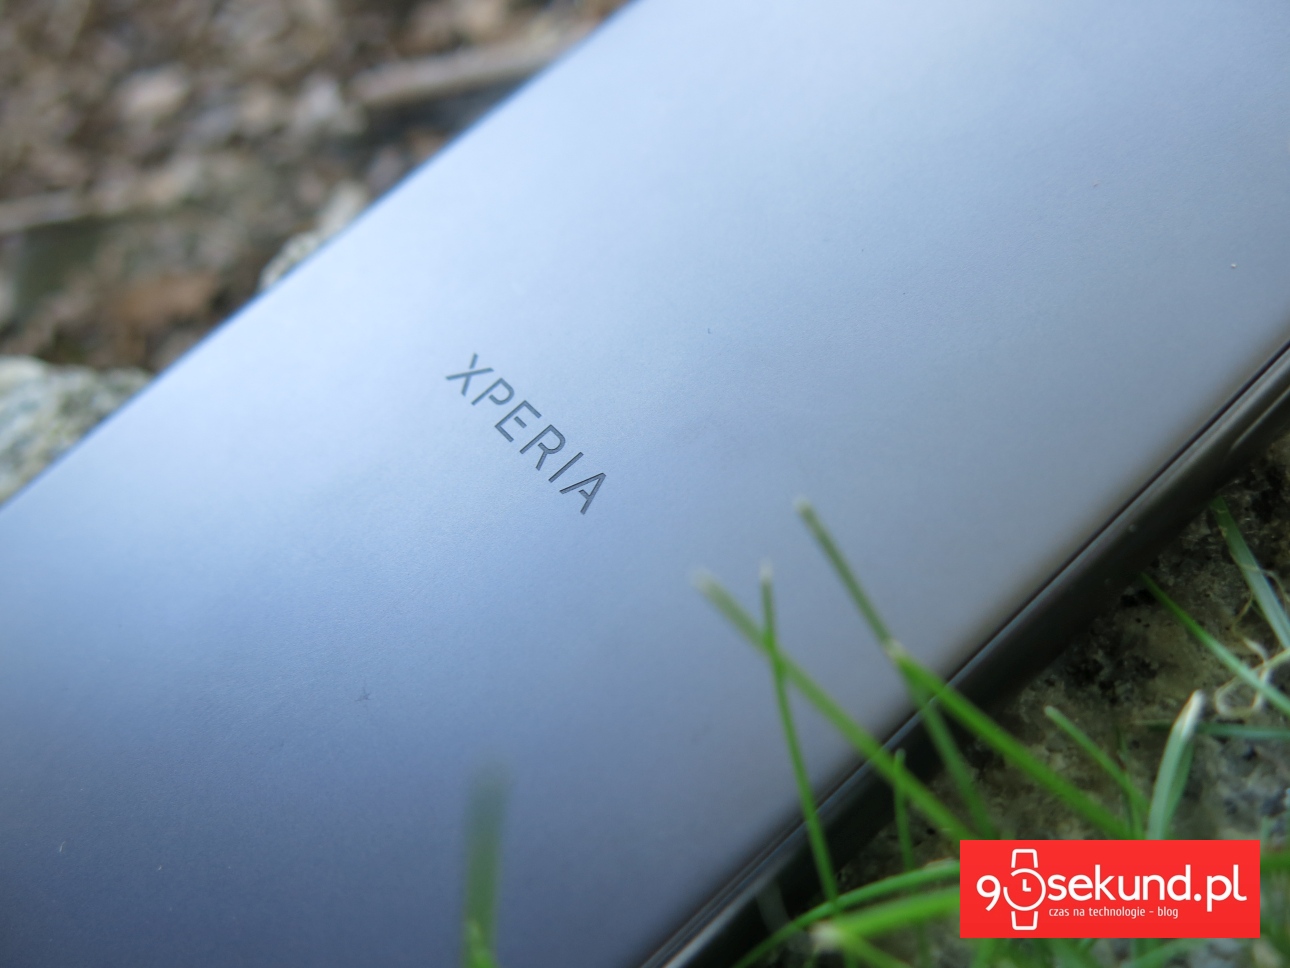 Recenzja Sony Xperia X 2016 (F5121) - 90sekund.pl